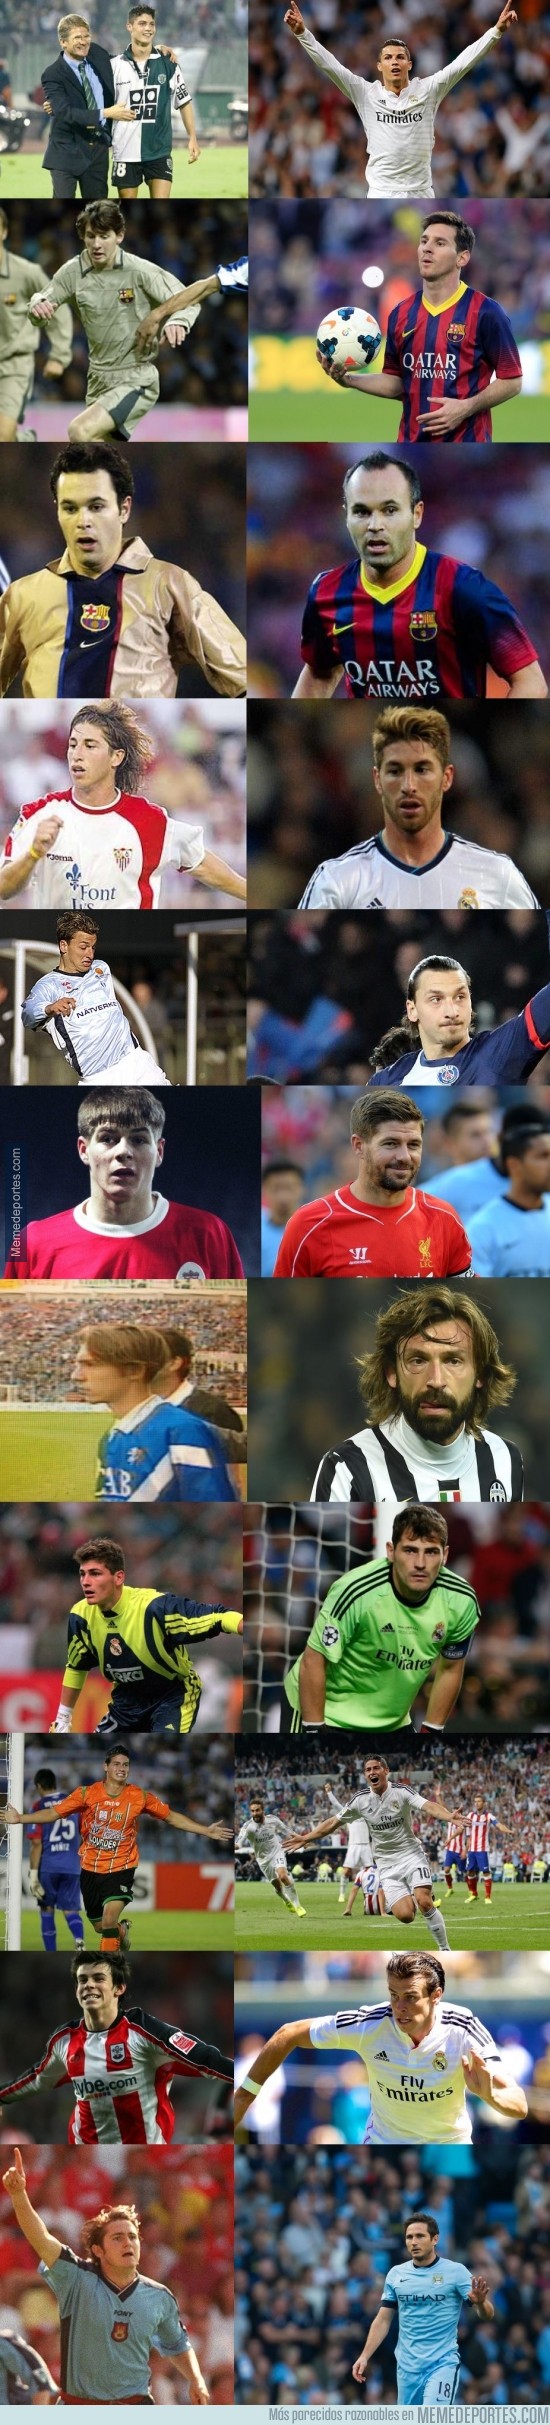 391594 - Del debut hasta hoy de algunos de los mejores futbolistas